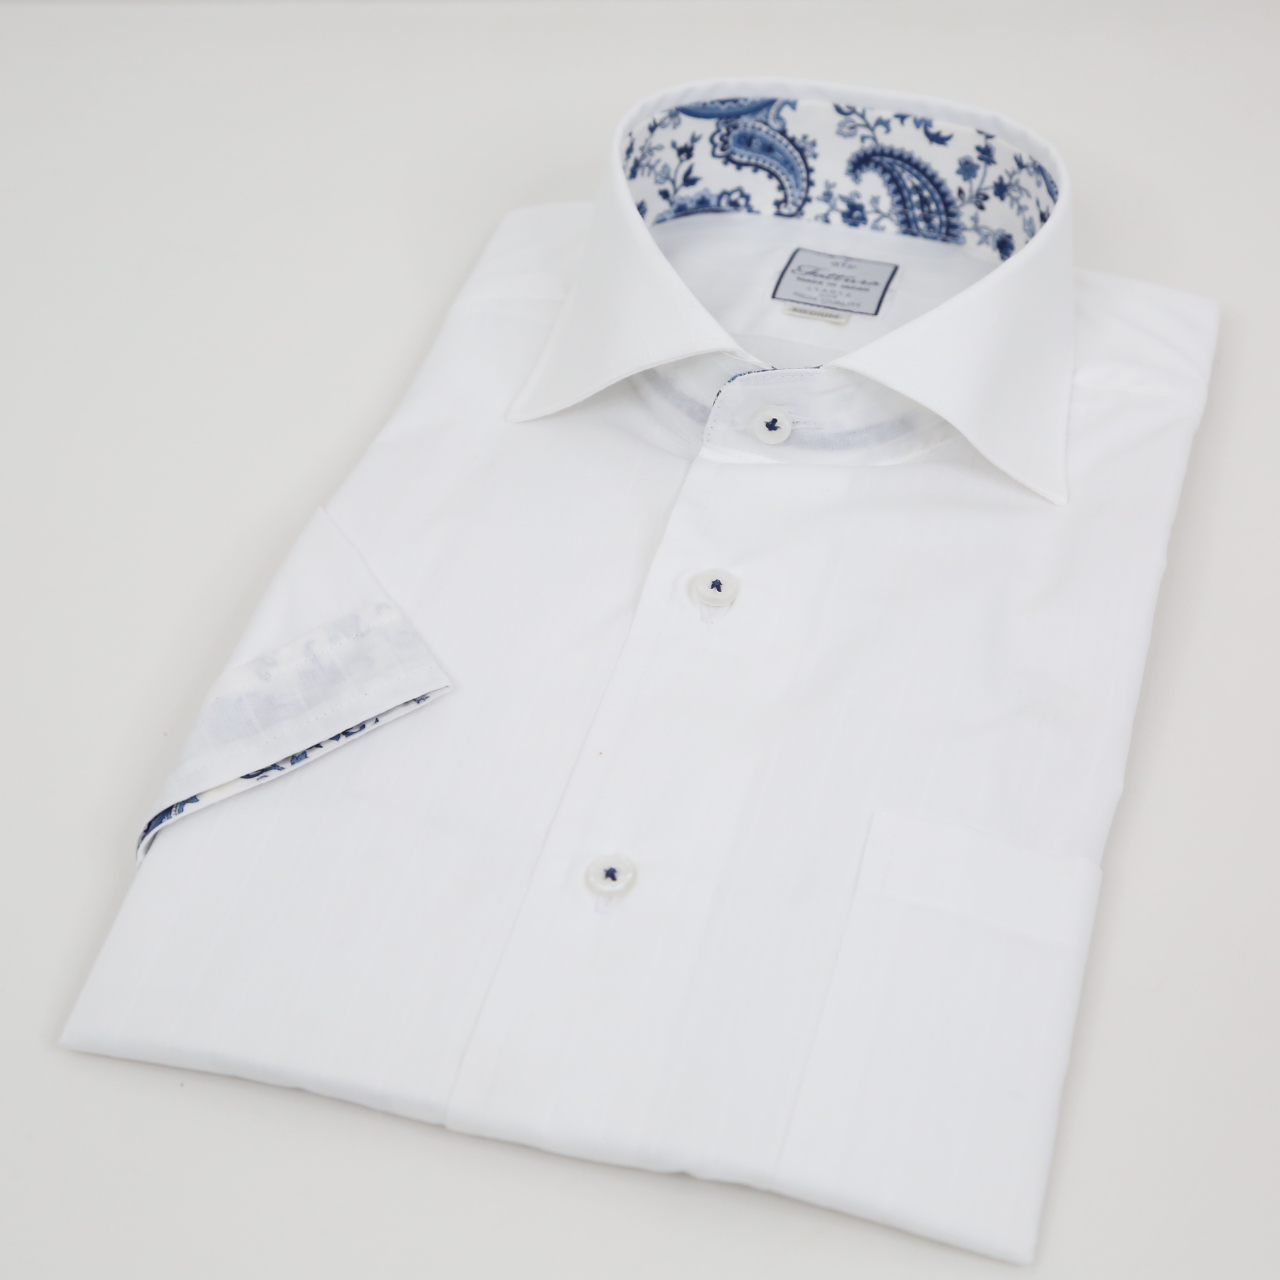 半袖シャツ  レギュラーサイズ  形態安定  ワイドスプレット  シングルボタン  ホワイト  日本製